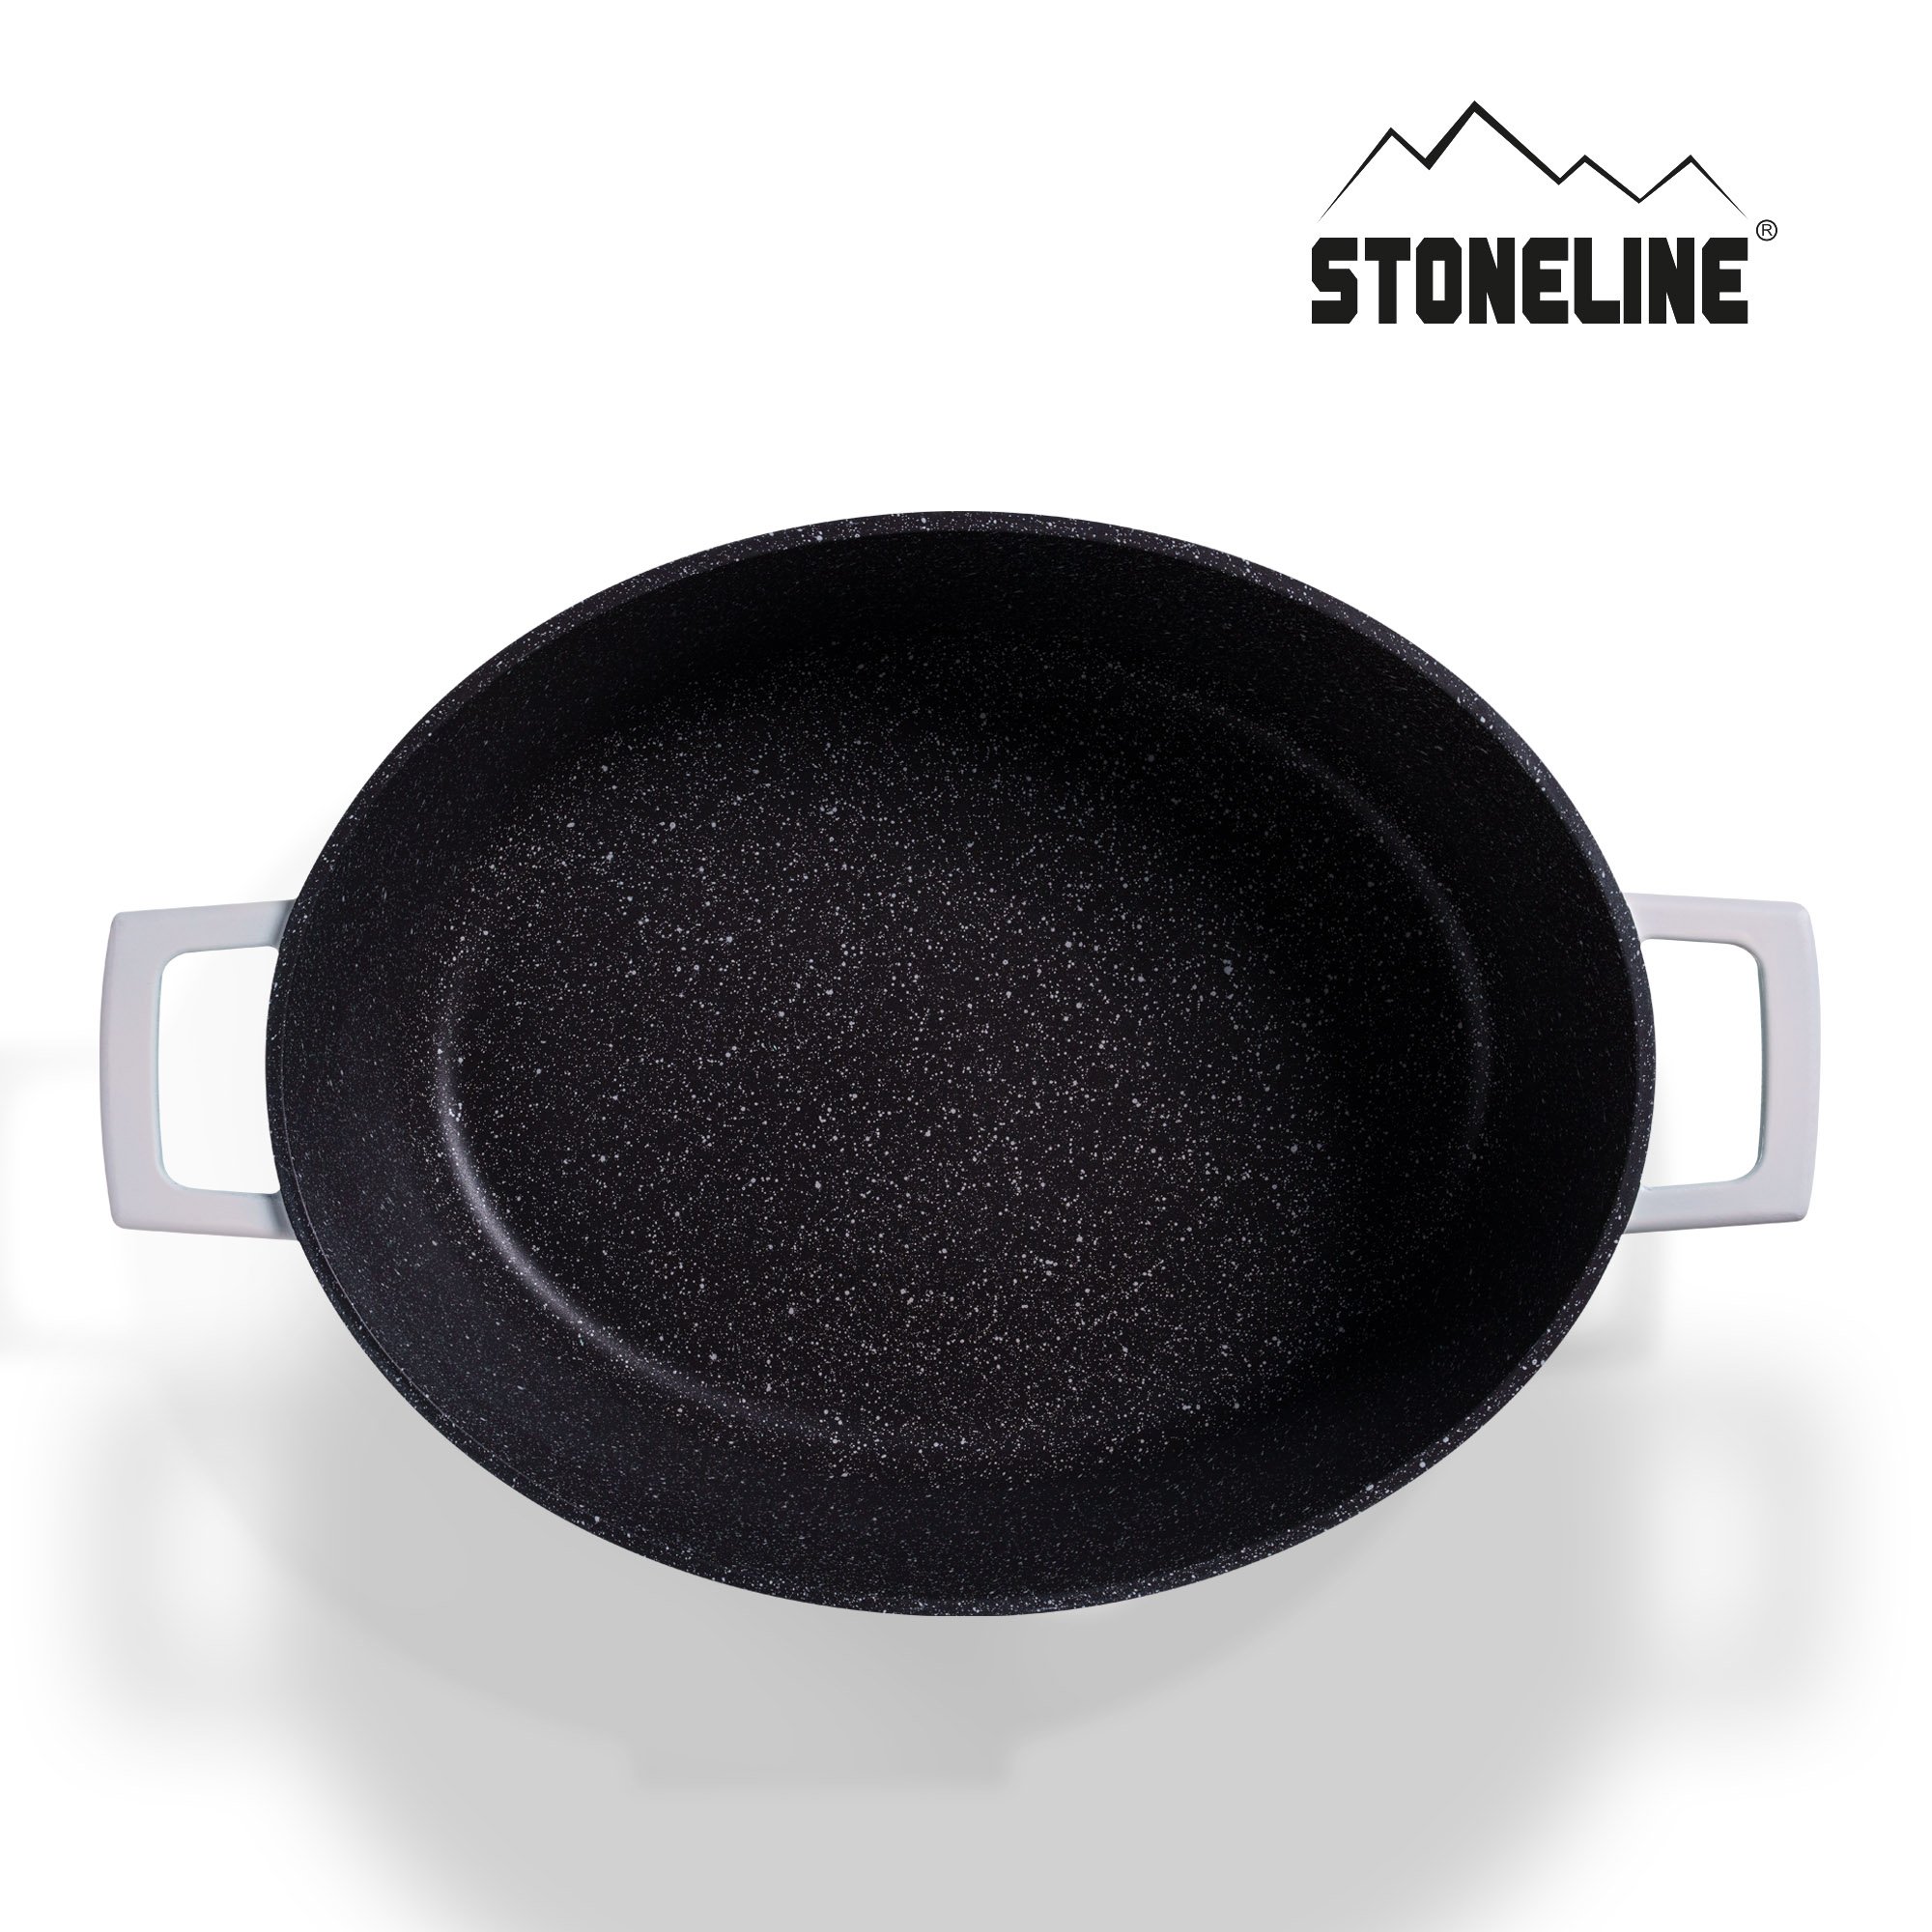 STONELINE® Creme Gourmet Bräter 32x25 cm mit Deckel, Backofen und Induktion geeignet, Antihaft